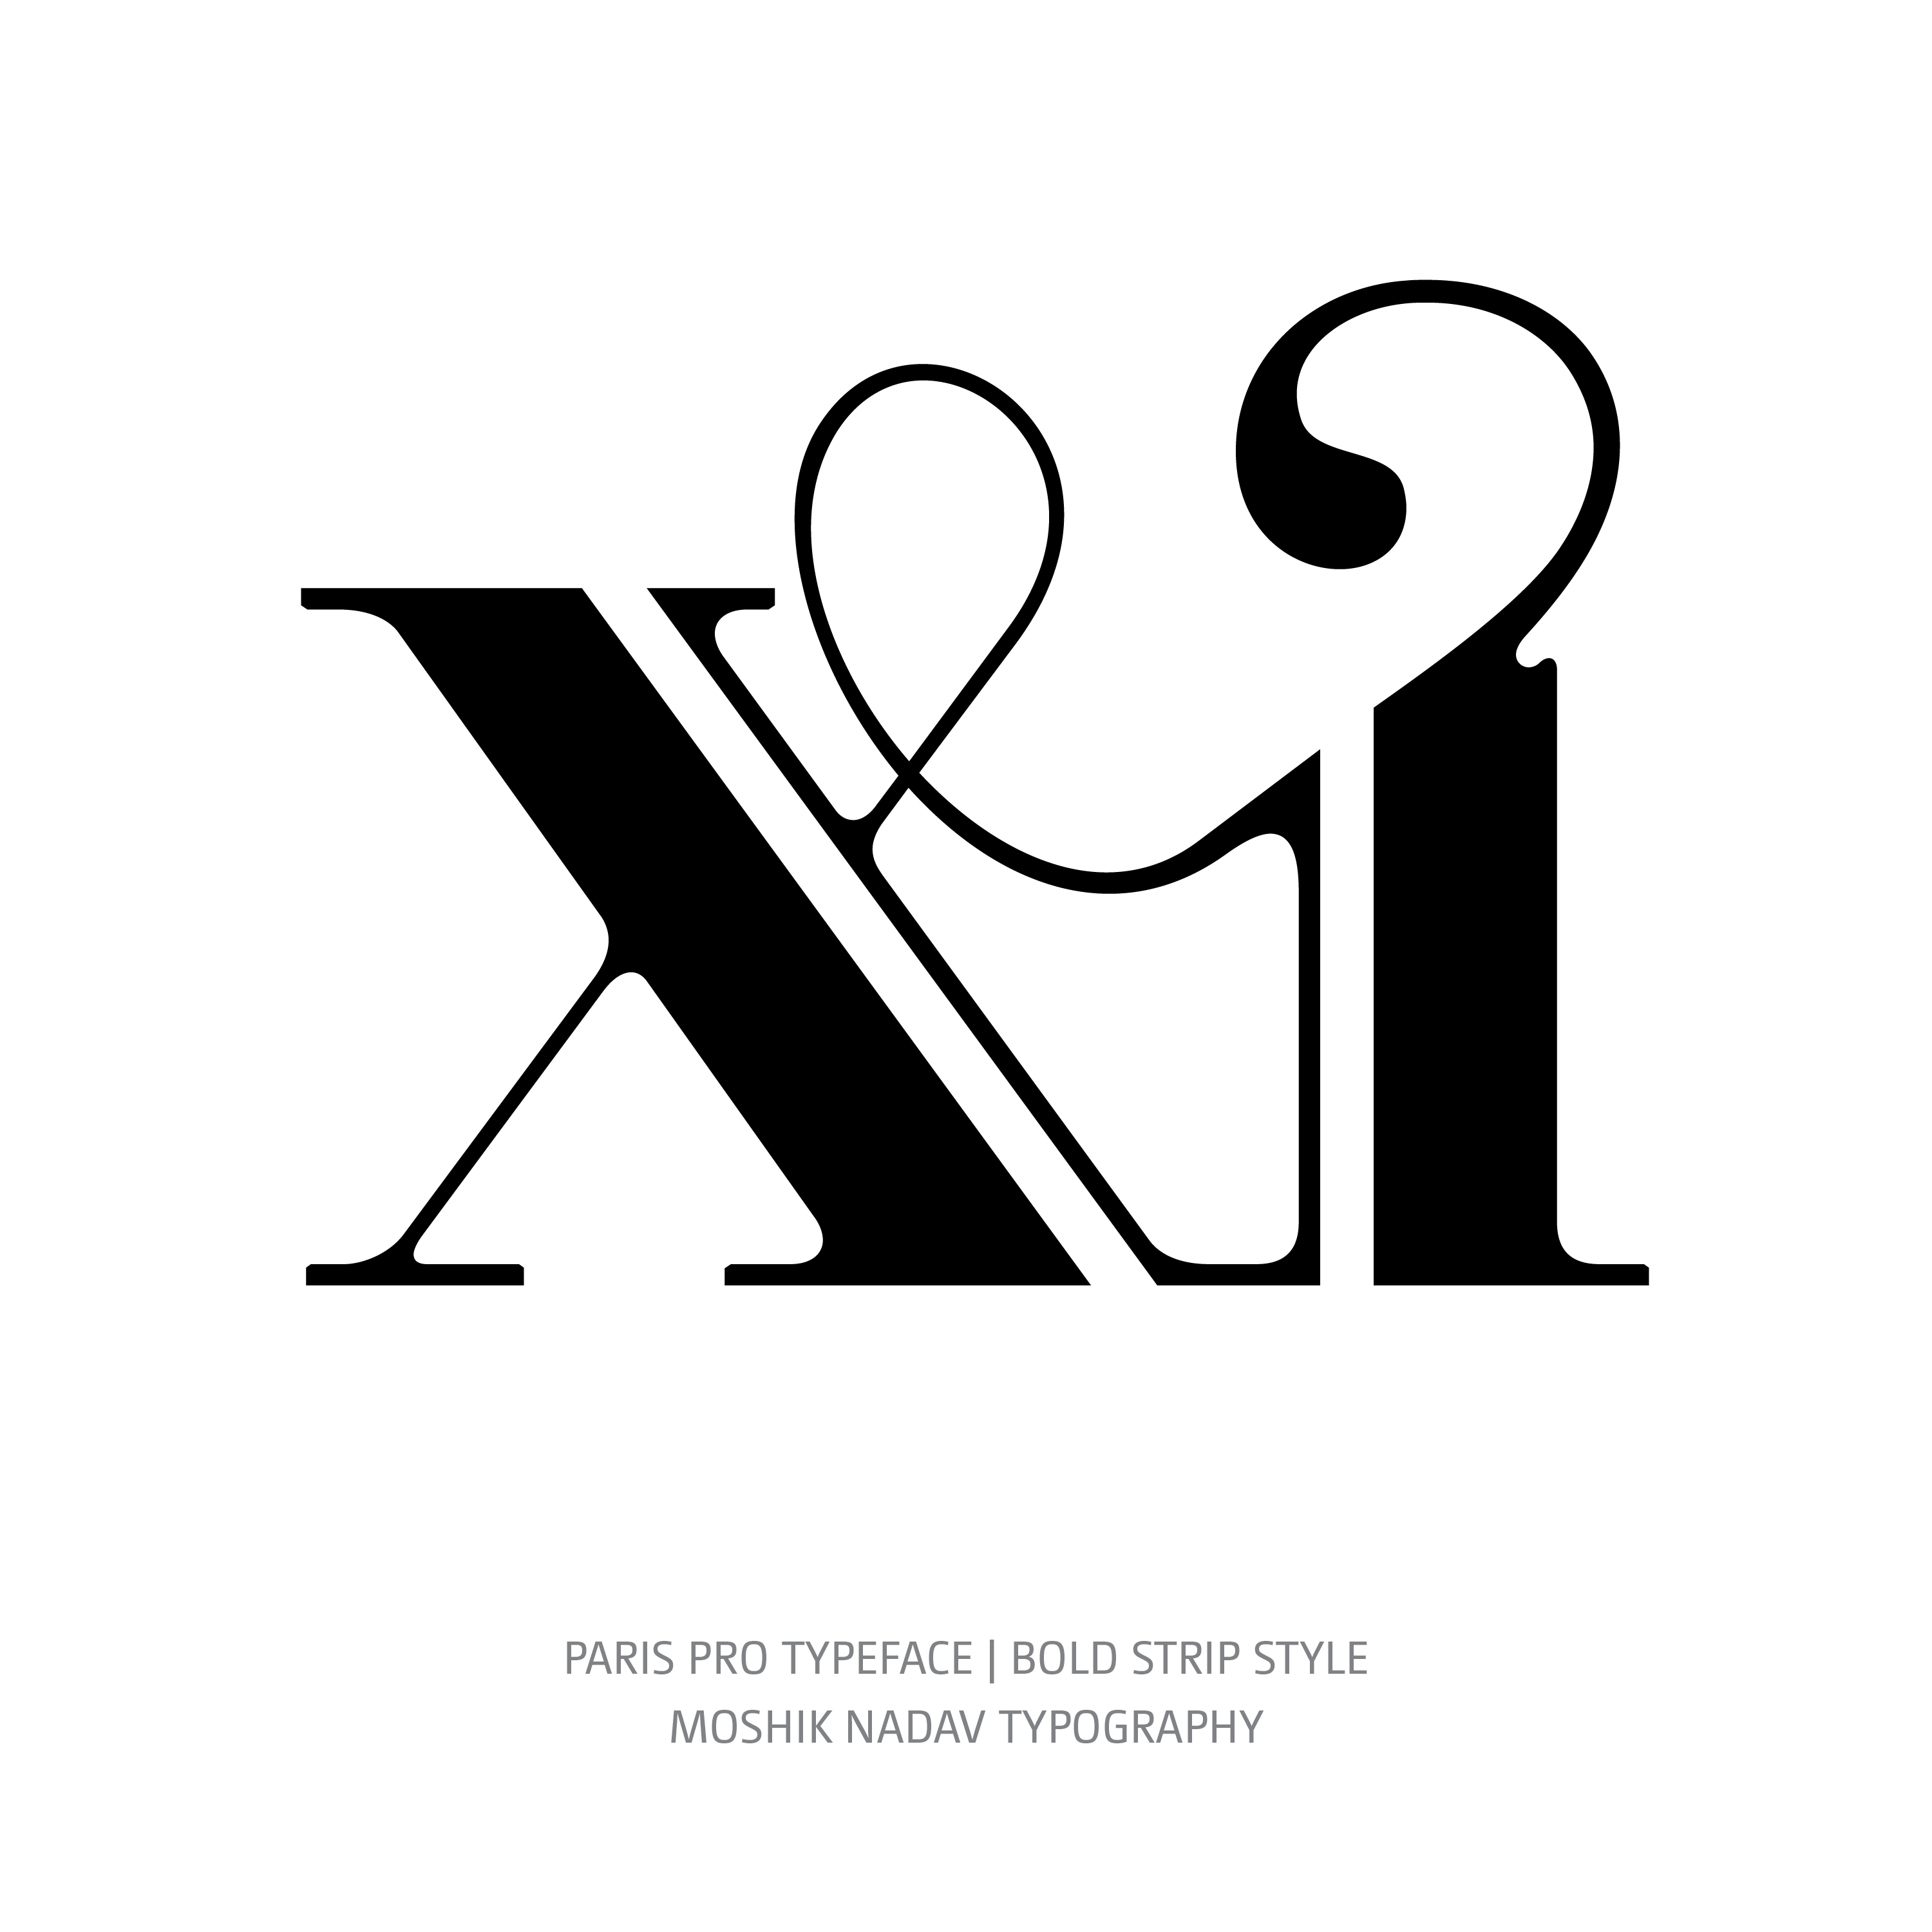 Paris Pro Typeface Bold Strip xi ligature